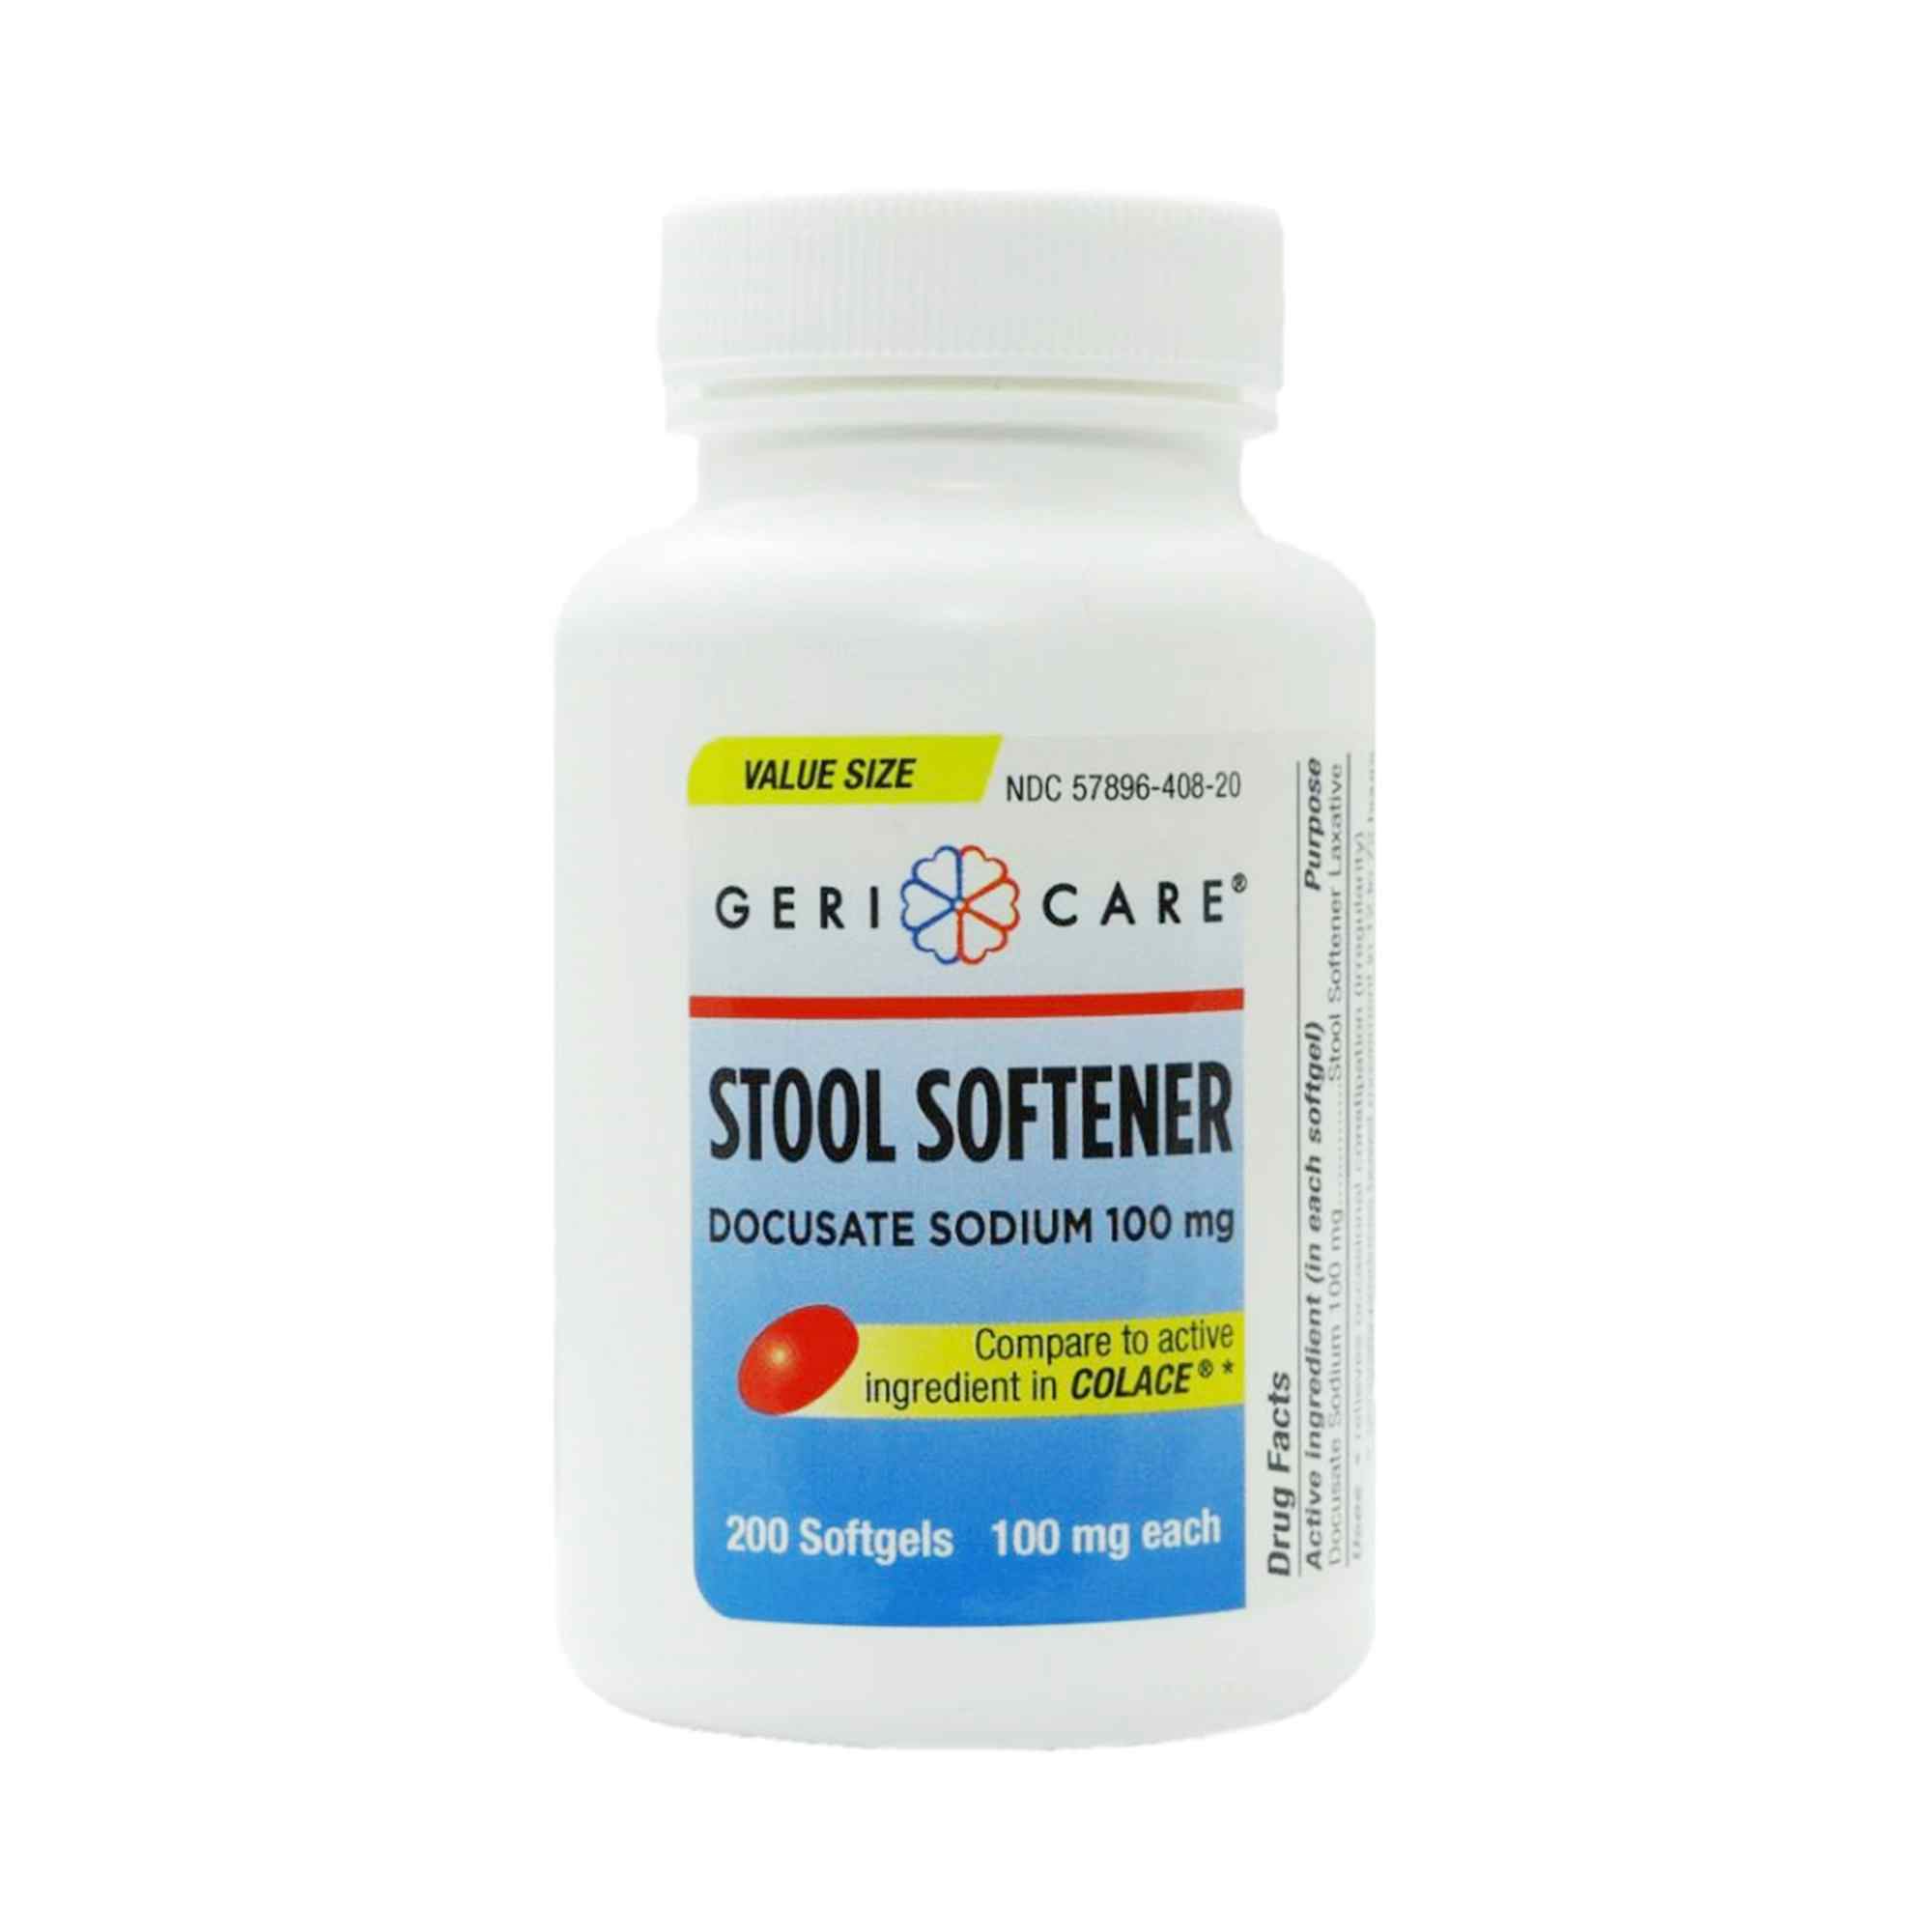 Geri-Care Stool Softener Docusate Sodium, 100 mg Strength, 401-20-GCP, 200 Tablets - 1 Bottle